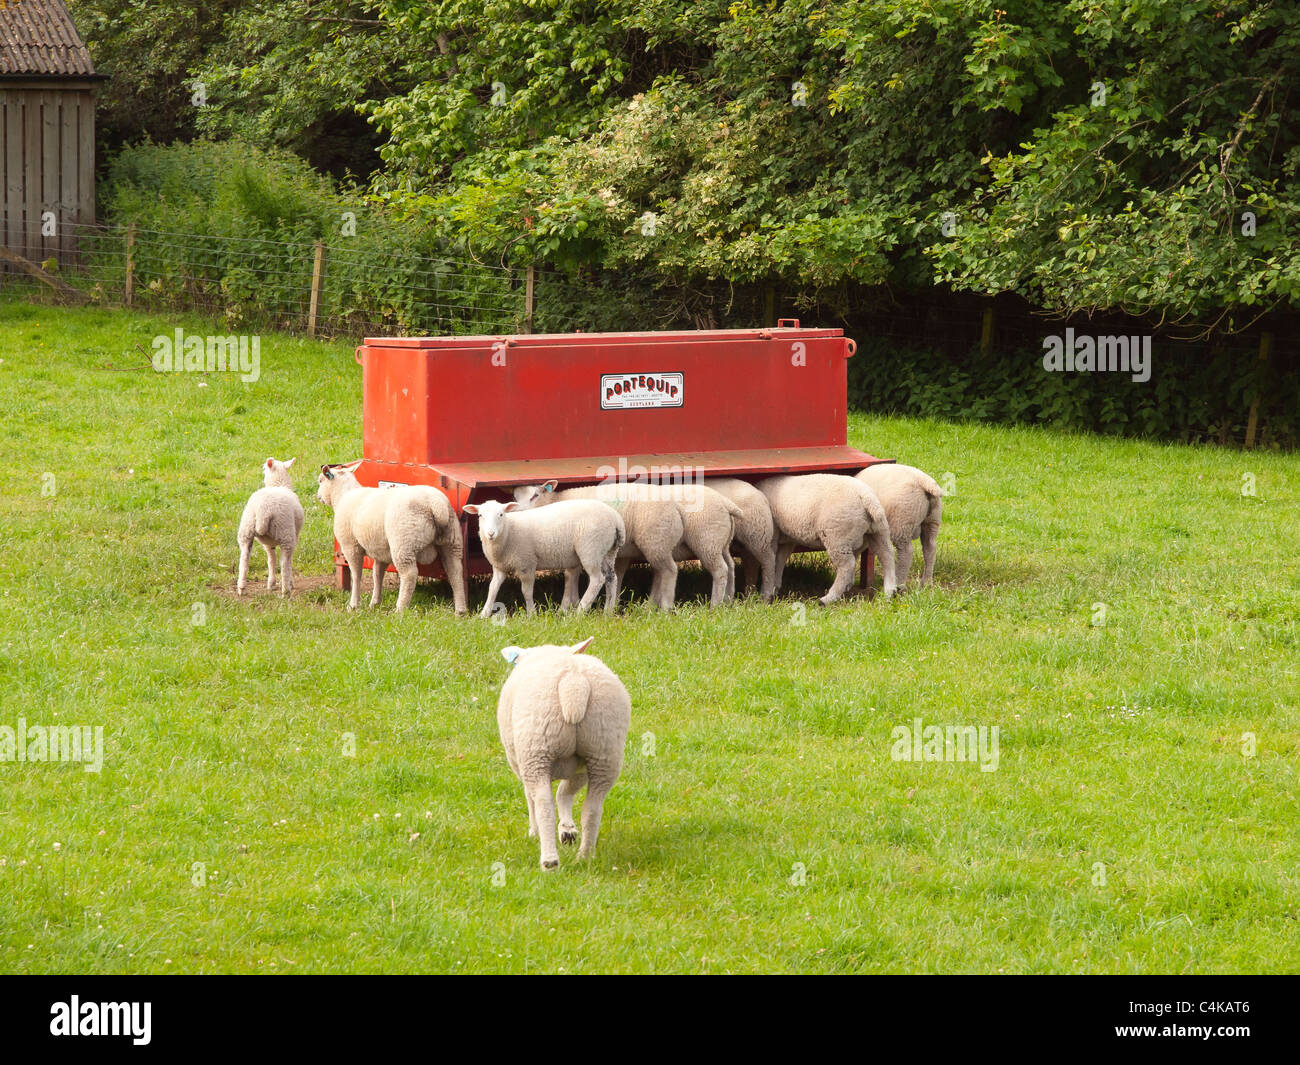 Jeune mouton s'alimenter à une alimentation rouge dans un champ vert dans une petite ferme Banque D'Images